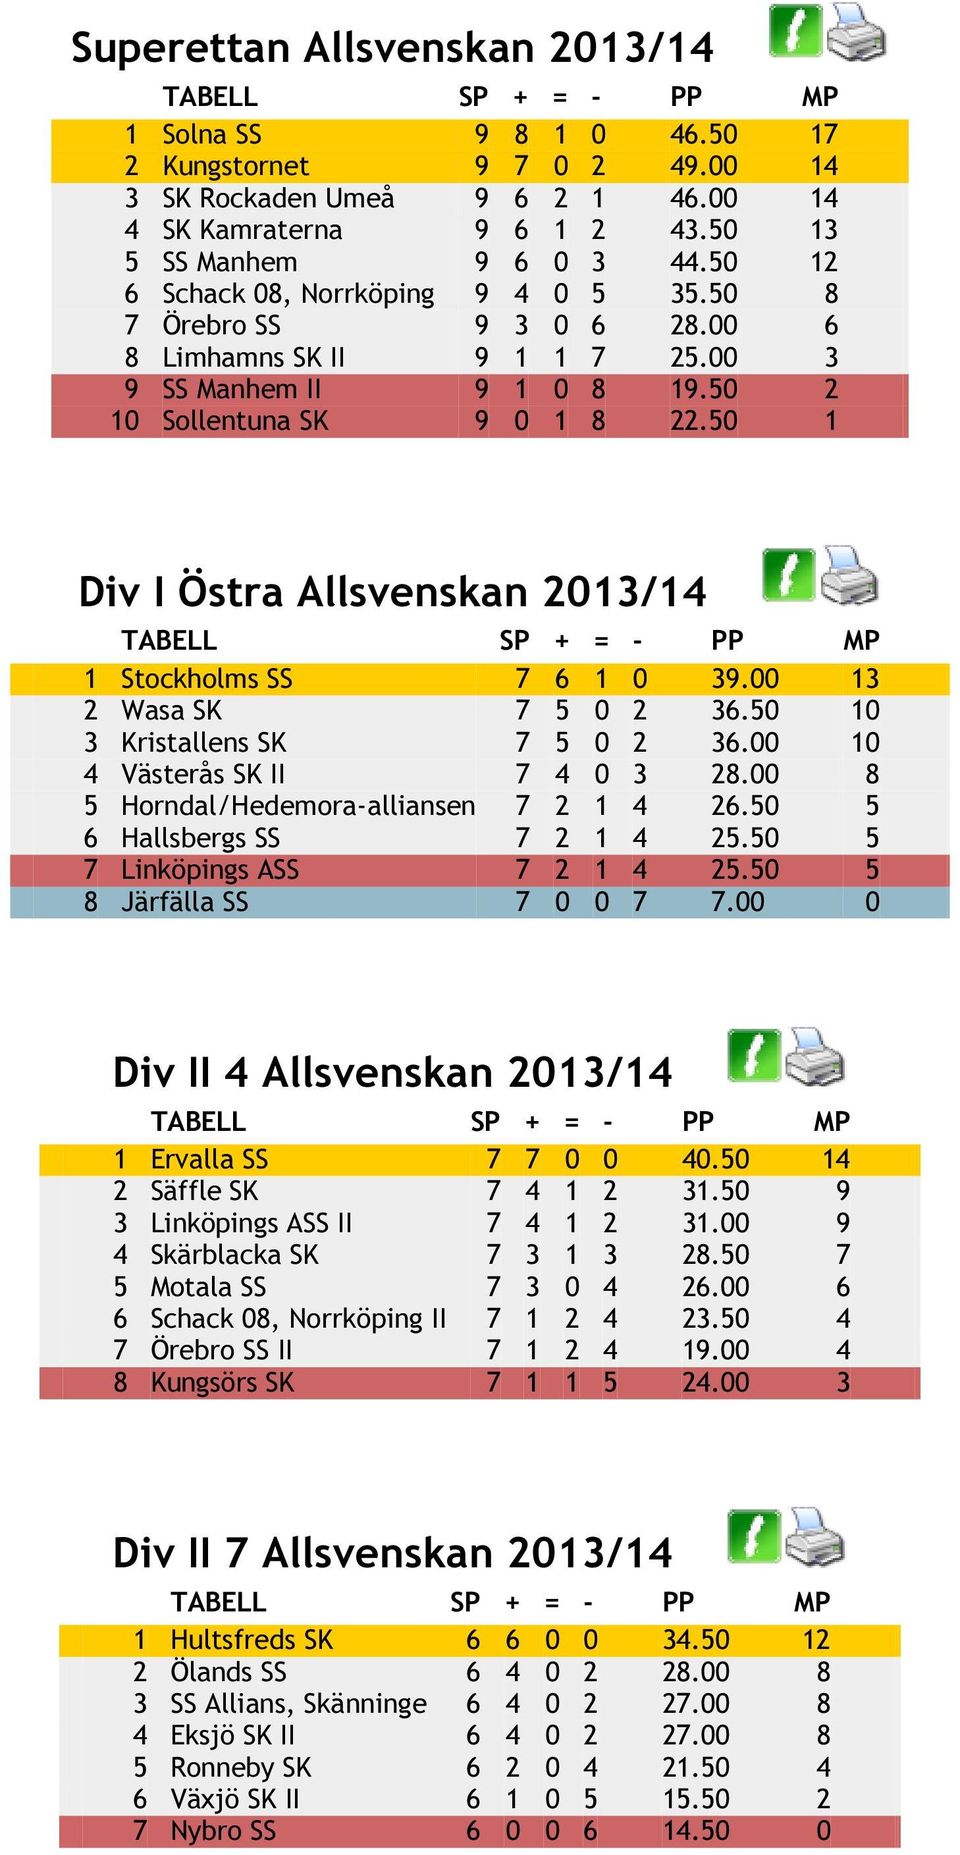 50 1 Div I Östra Allsvenskan 2013/14 1 Stockholms SS 7 6 1 0 39.00 13 2 Wasa SK 7 5 0 2 36.50 10 3 Kristallens SK 7 5 0 2 36.00 10 4 Västerås SK II 7 4 0 3 28.